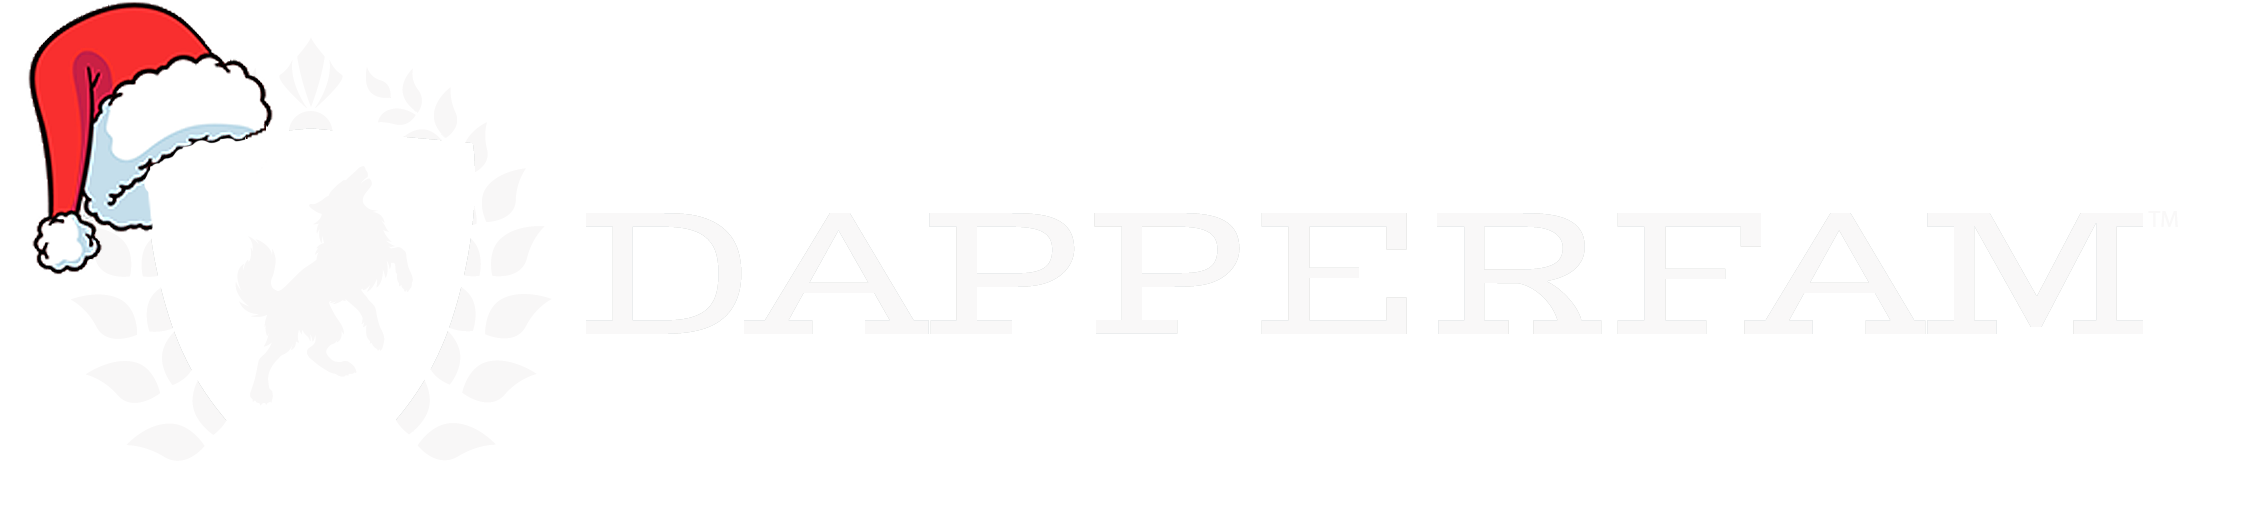 DapperFam.com